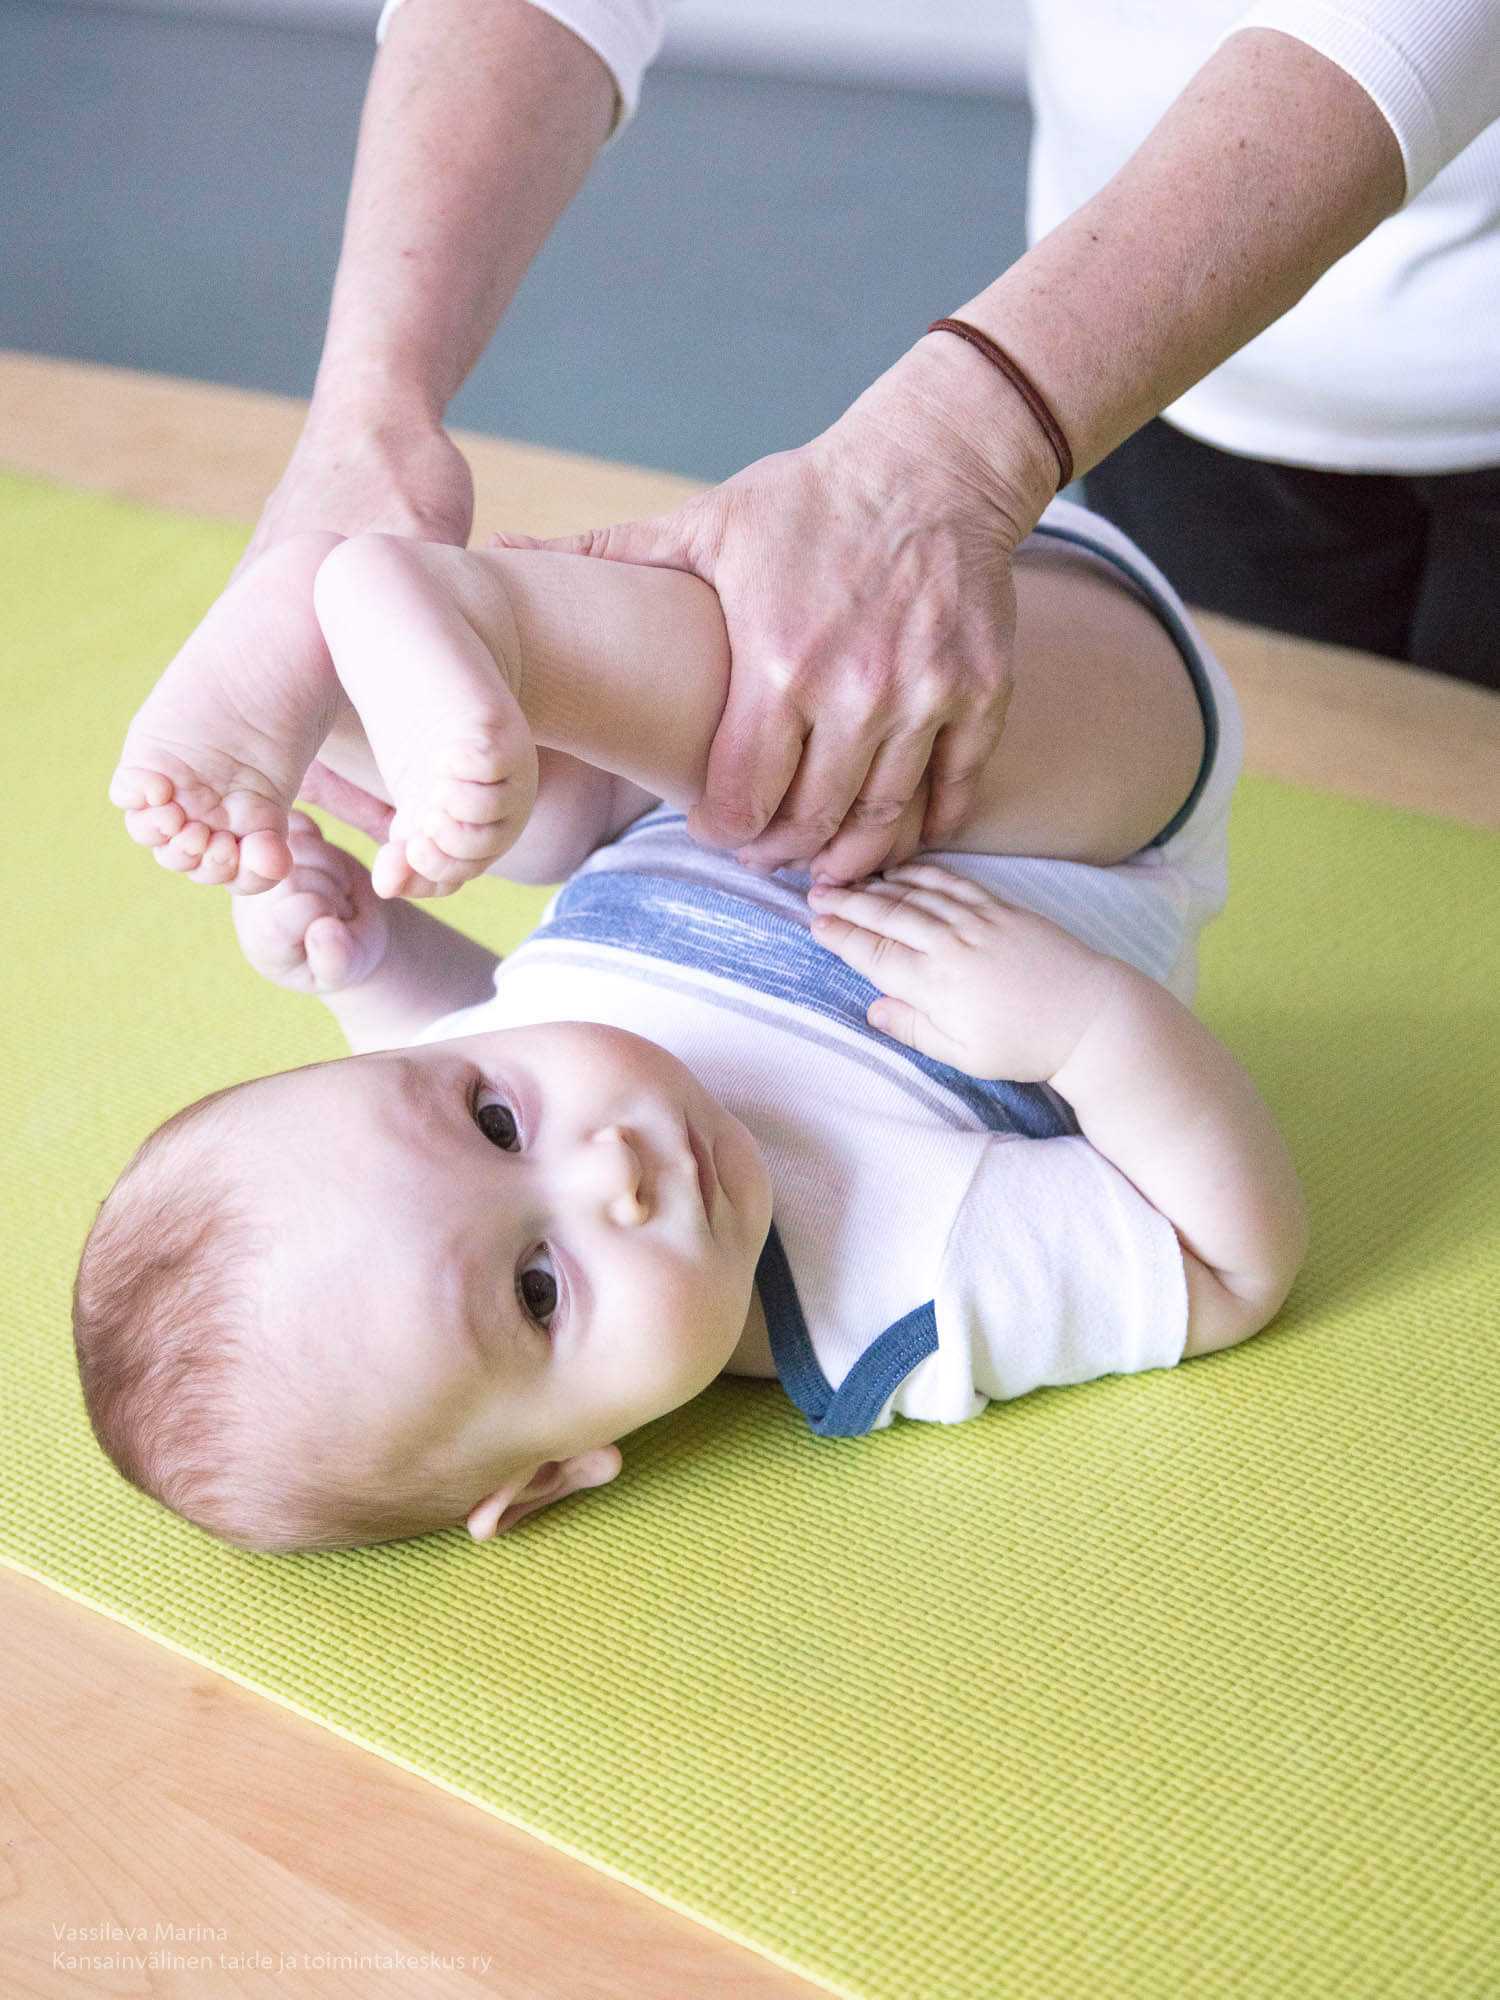 Детский массаж (47 фото): как делать массаж ребенку, польза общего и лечебного массажей, расслабляющая техника в домашних условиях, можно ли делать при температуре, тонкости массажа спины